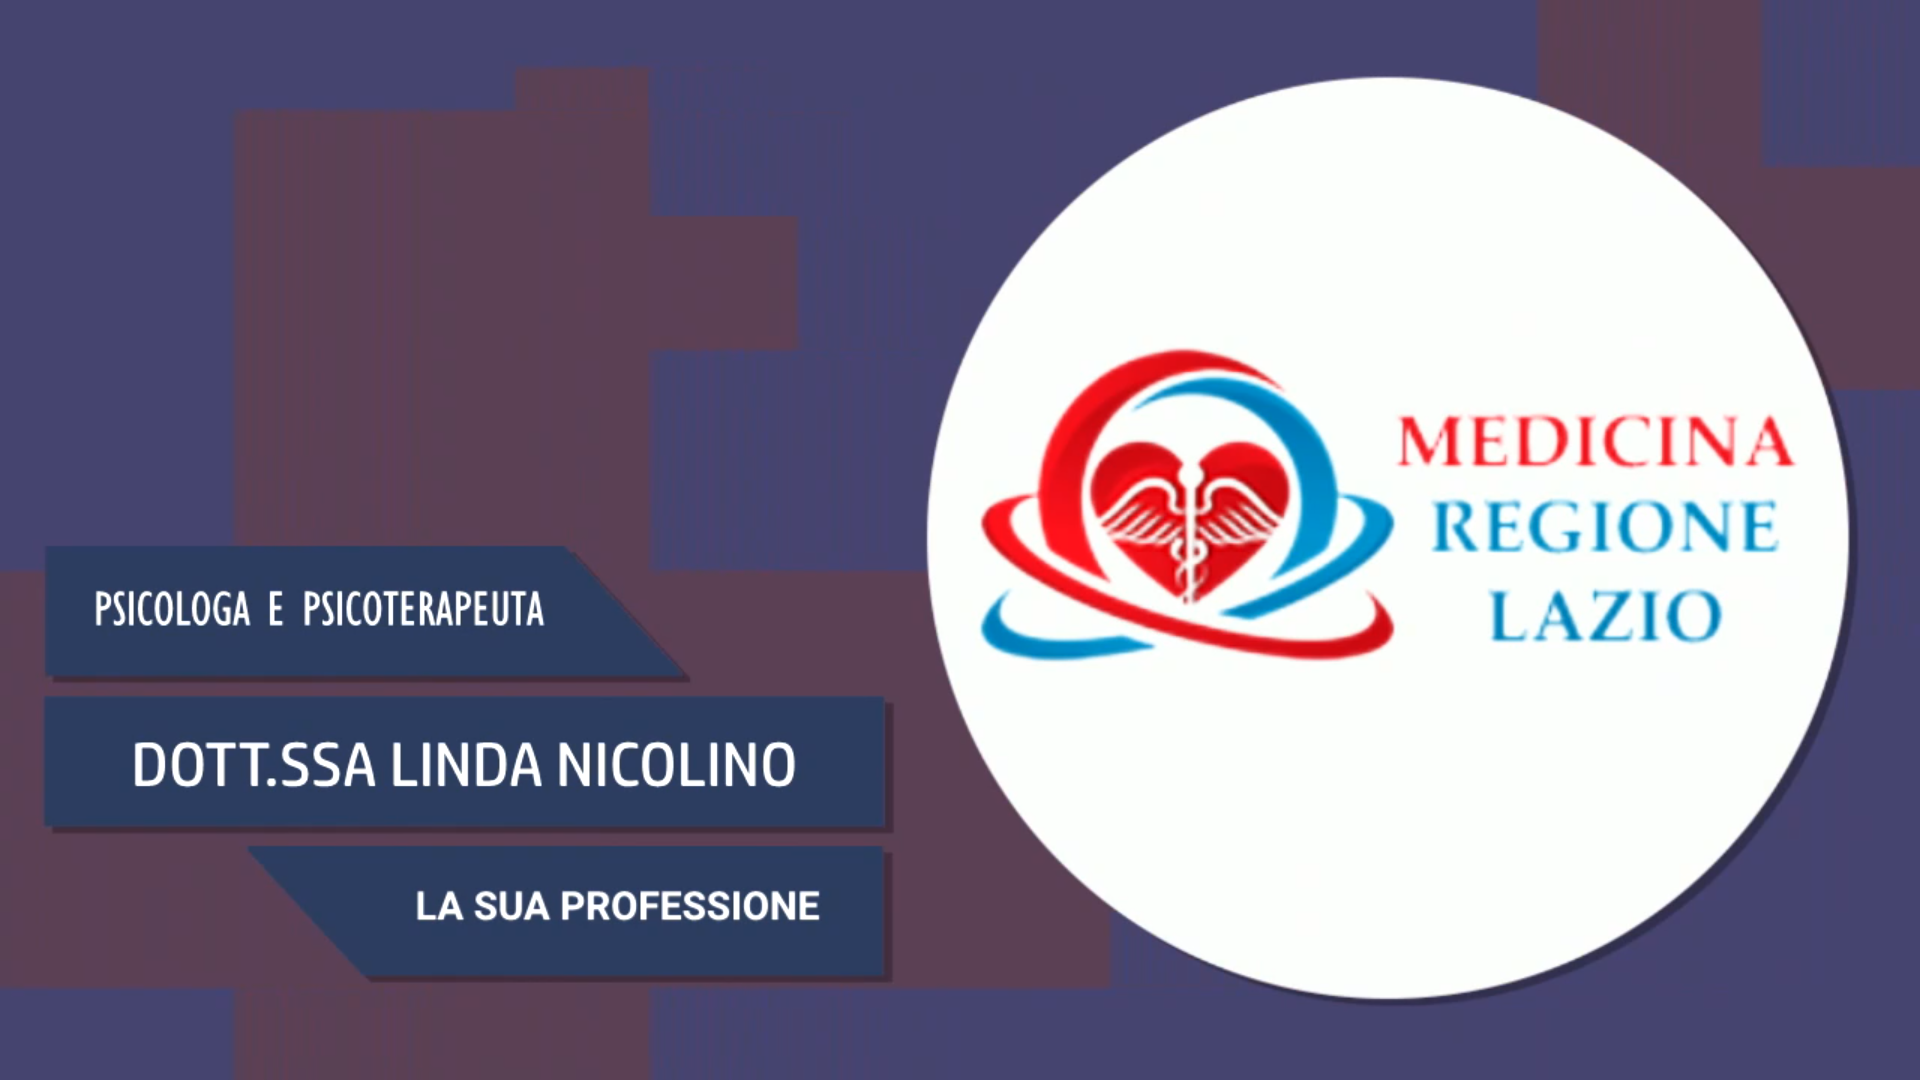 Intervista alla Dott.ssa Linda Nicolino – La sua professione